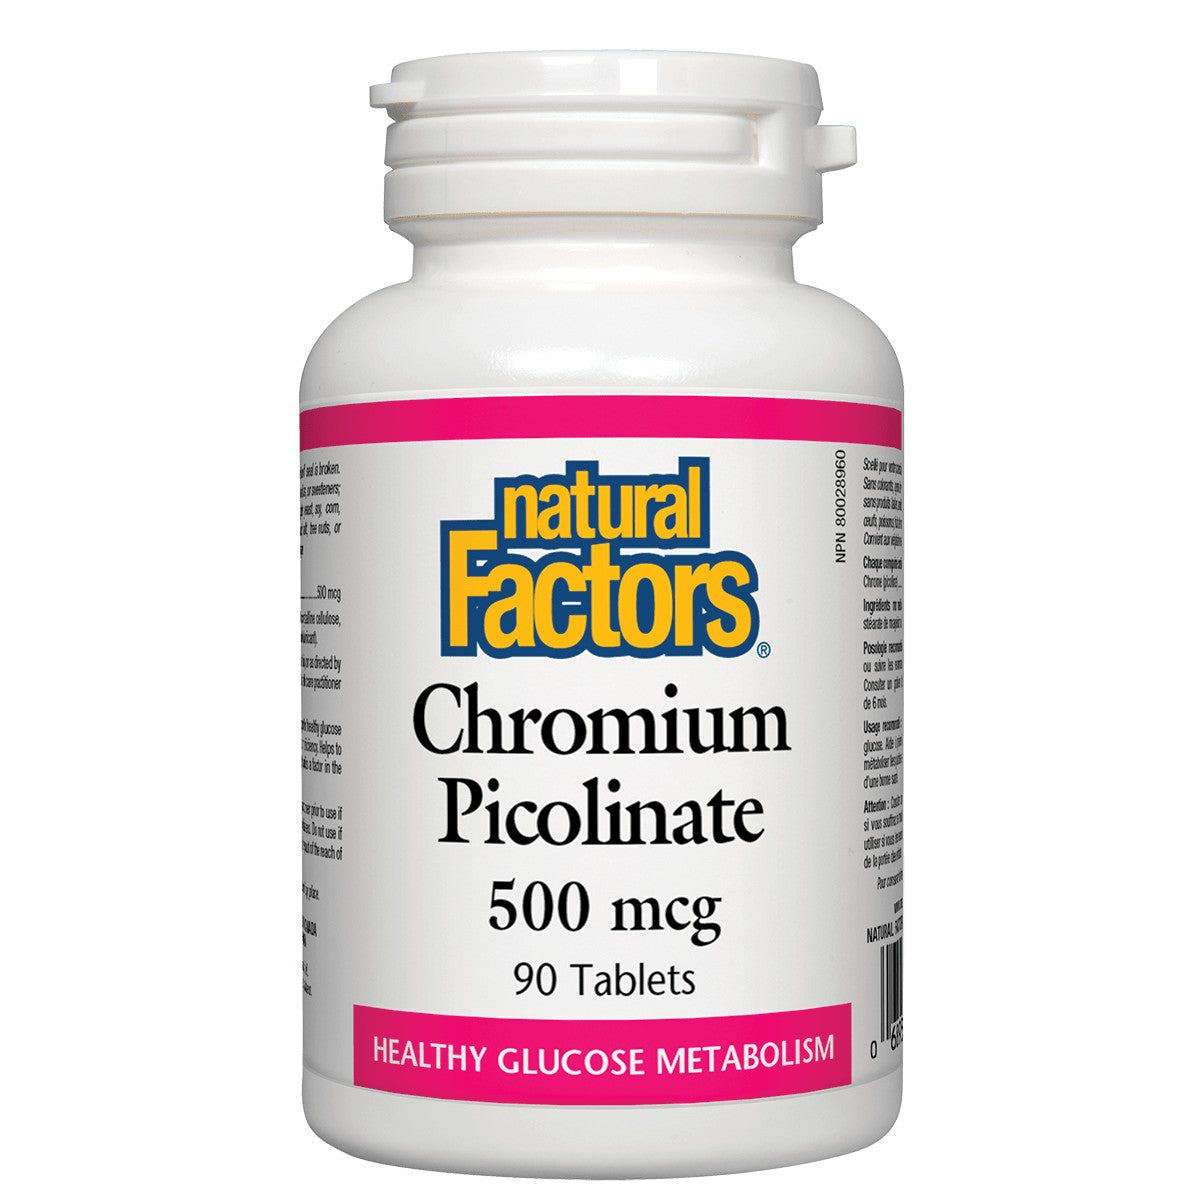 Natural Factors Chromium Picolinate 500 Mcg, 90 Tablets